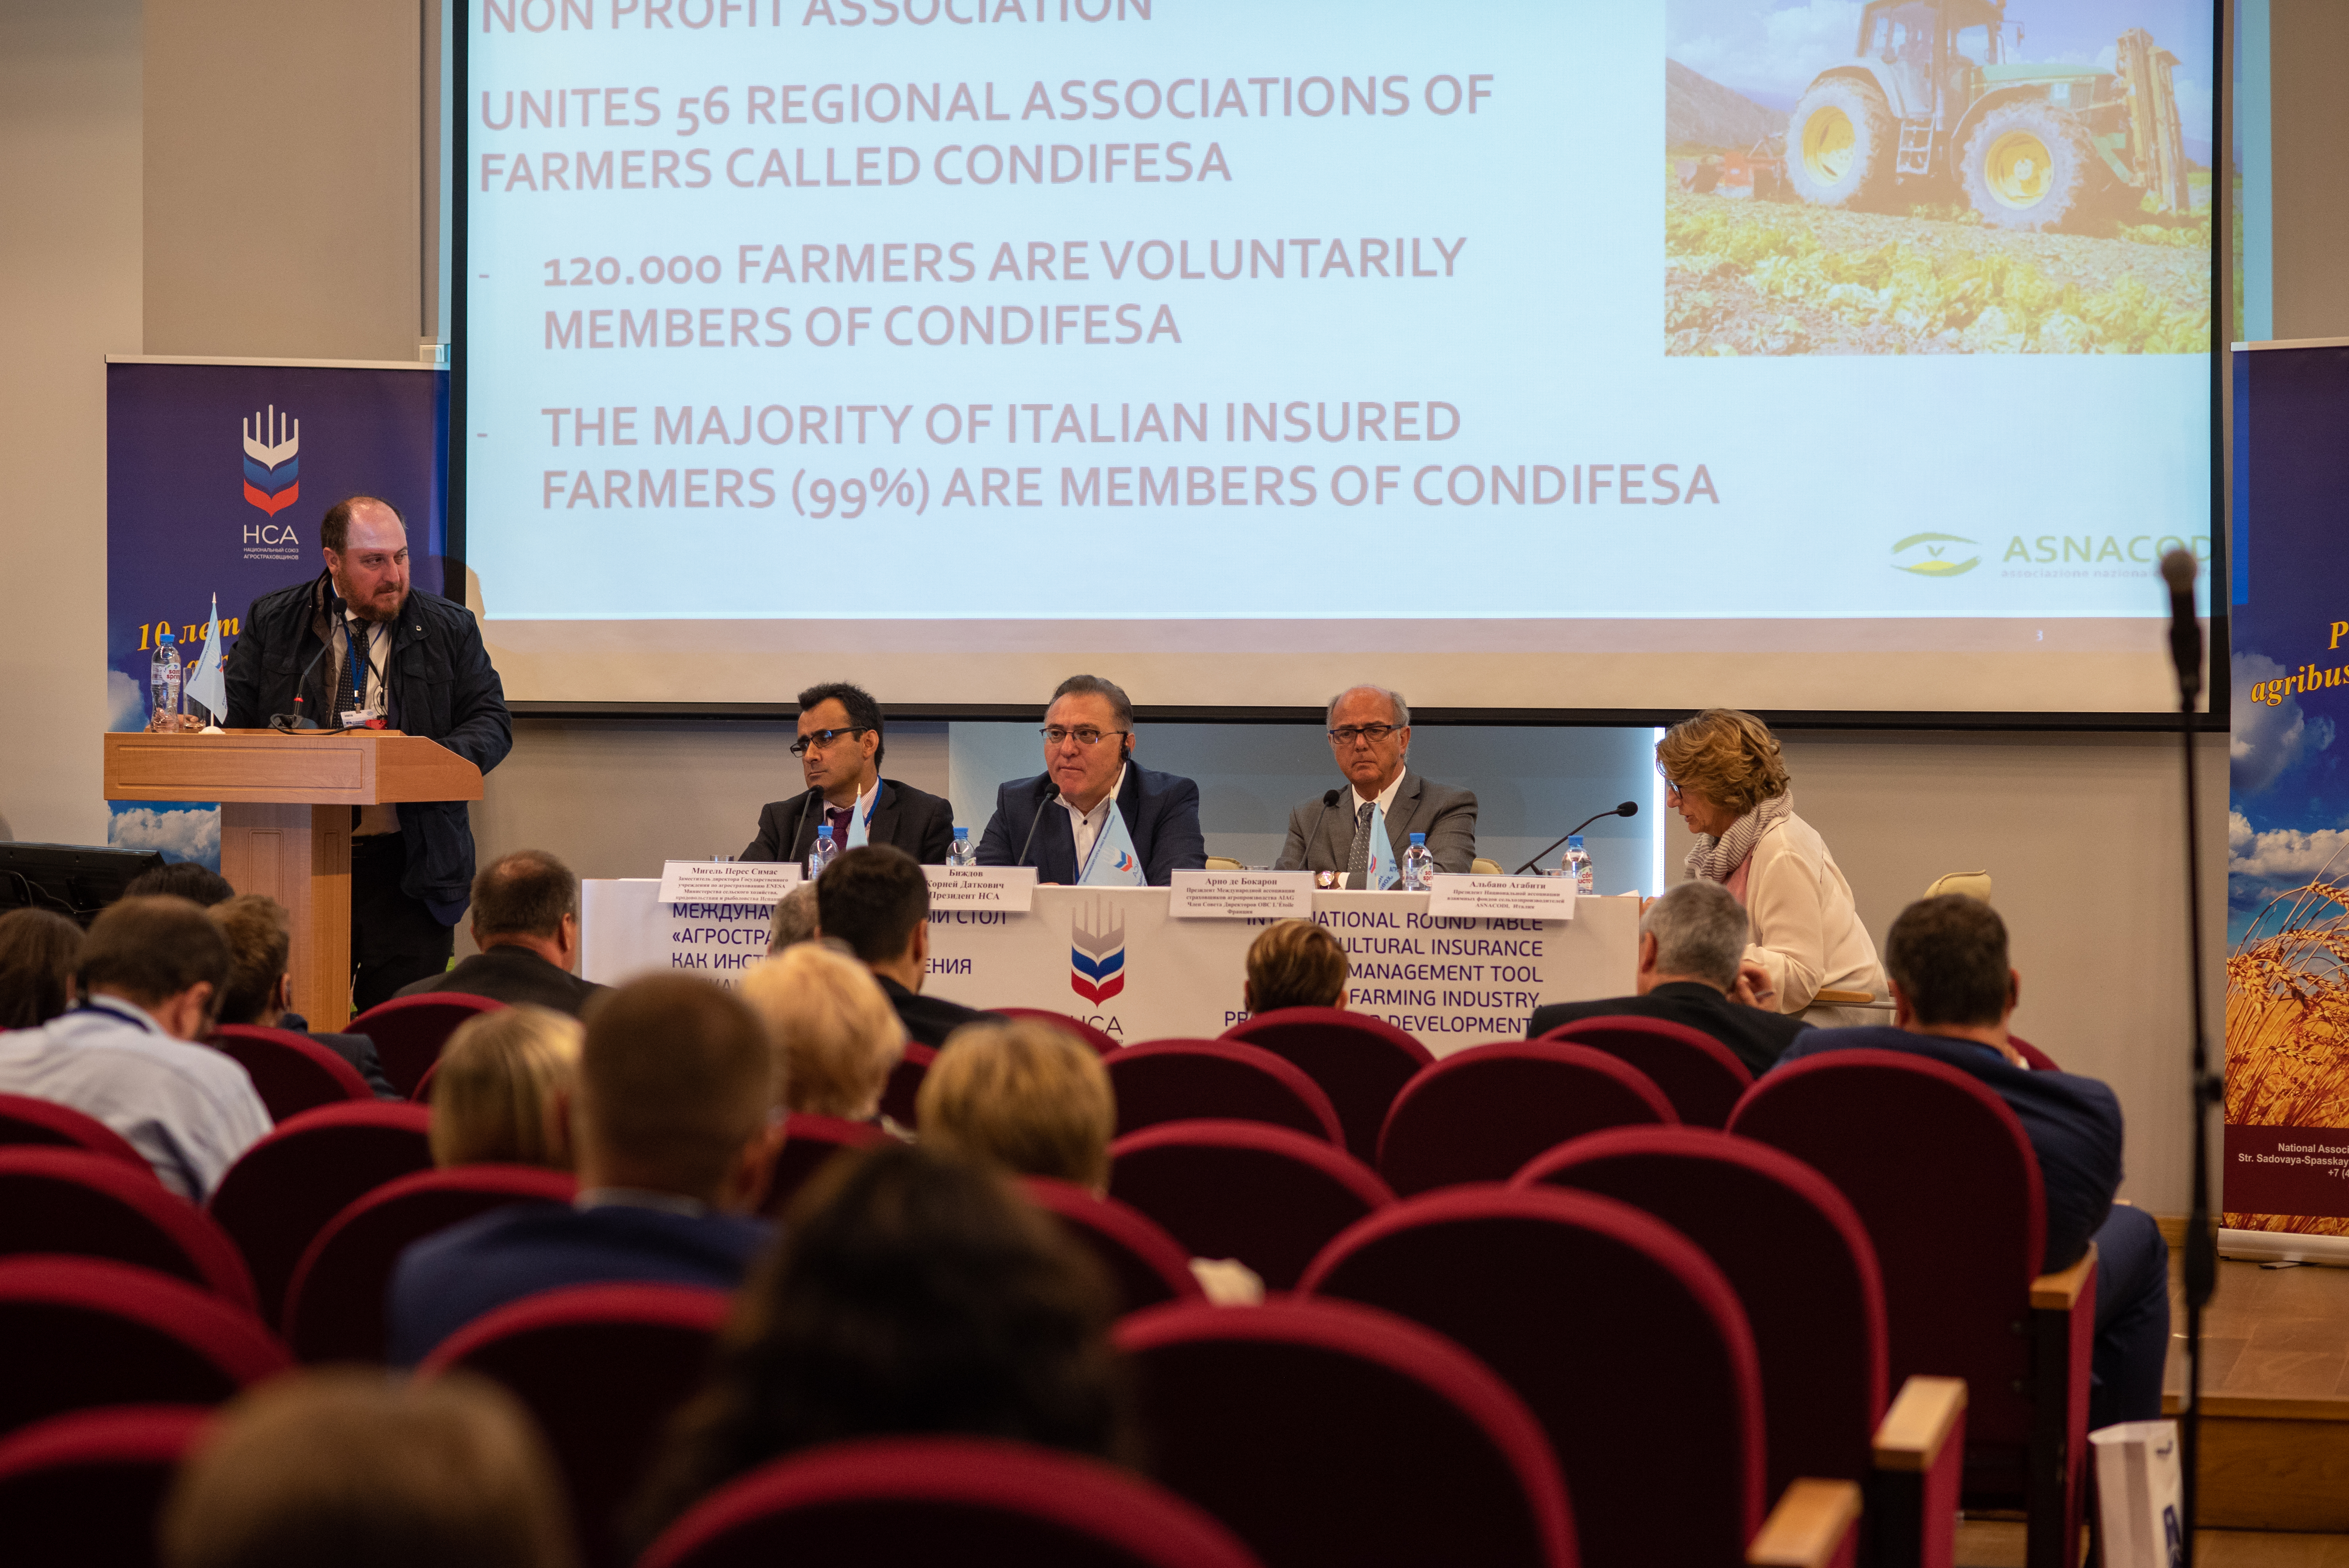 НСА: Президент ASNACODI Альбано Агабити обозначил основные тренды риск-менеджмента в аграрной политике ЕС